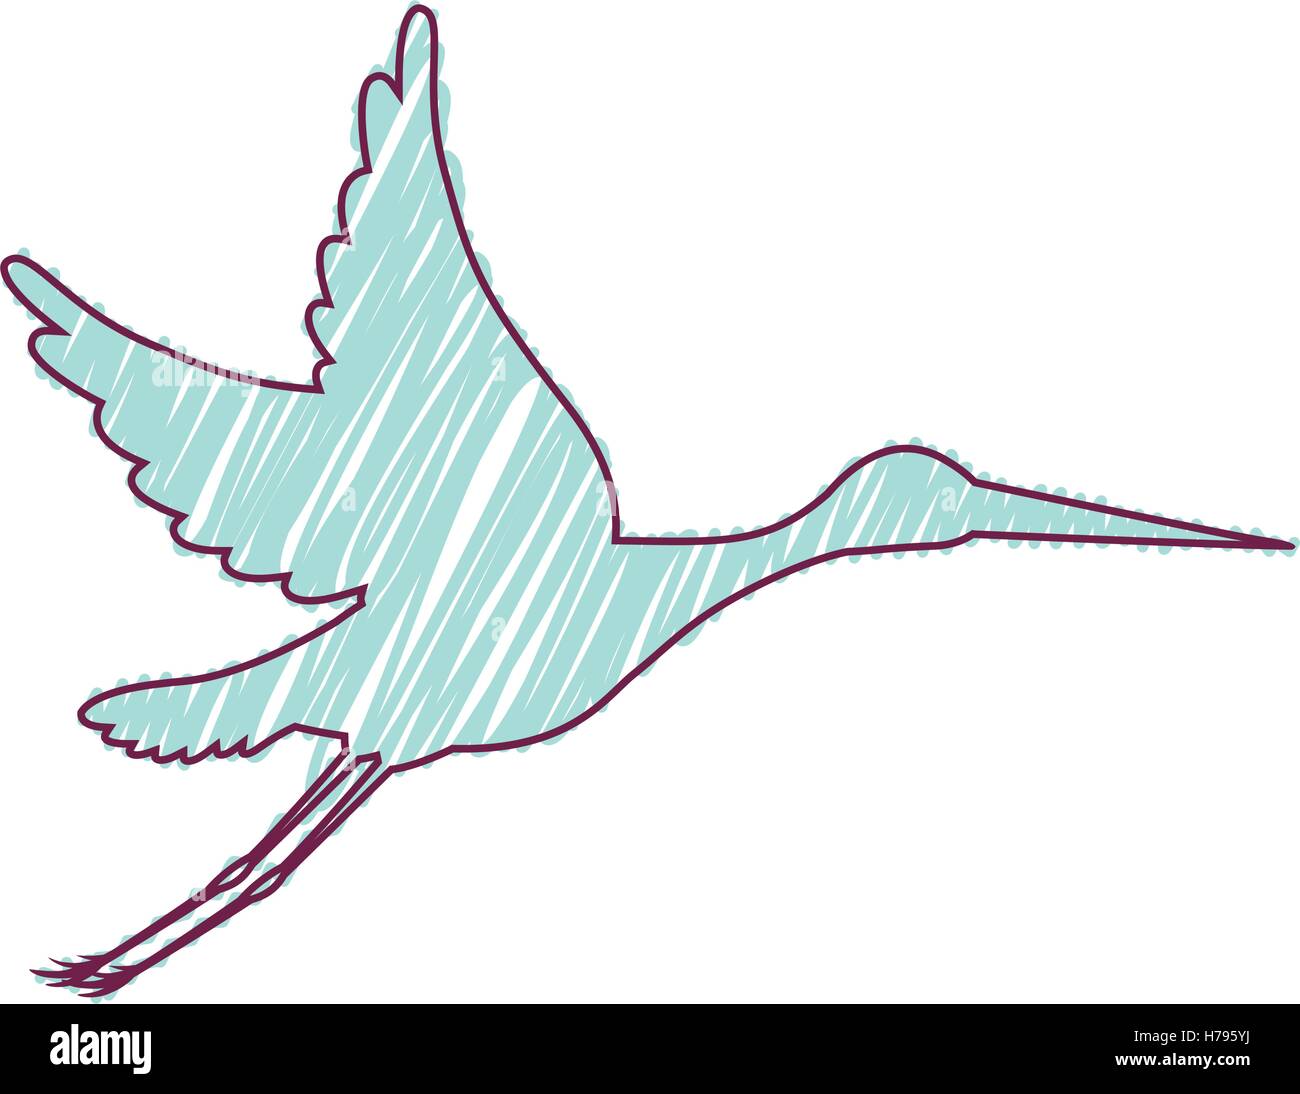 Cartoon-Storch Vogel fliegen Symbol auf weißem Hintergrund. Skizzieren Sie  und zeichnen Sie Entwurf. Vektor-illustration Stock-Vektorgrafik - Alamy